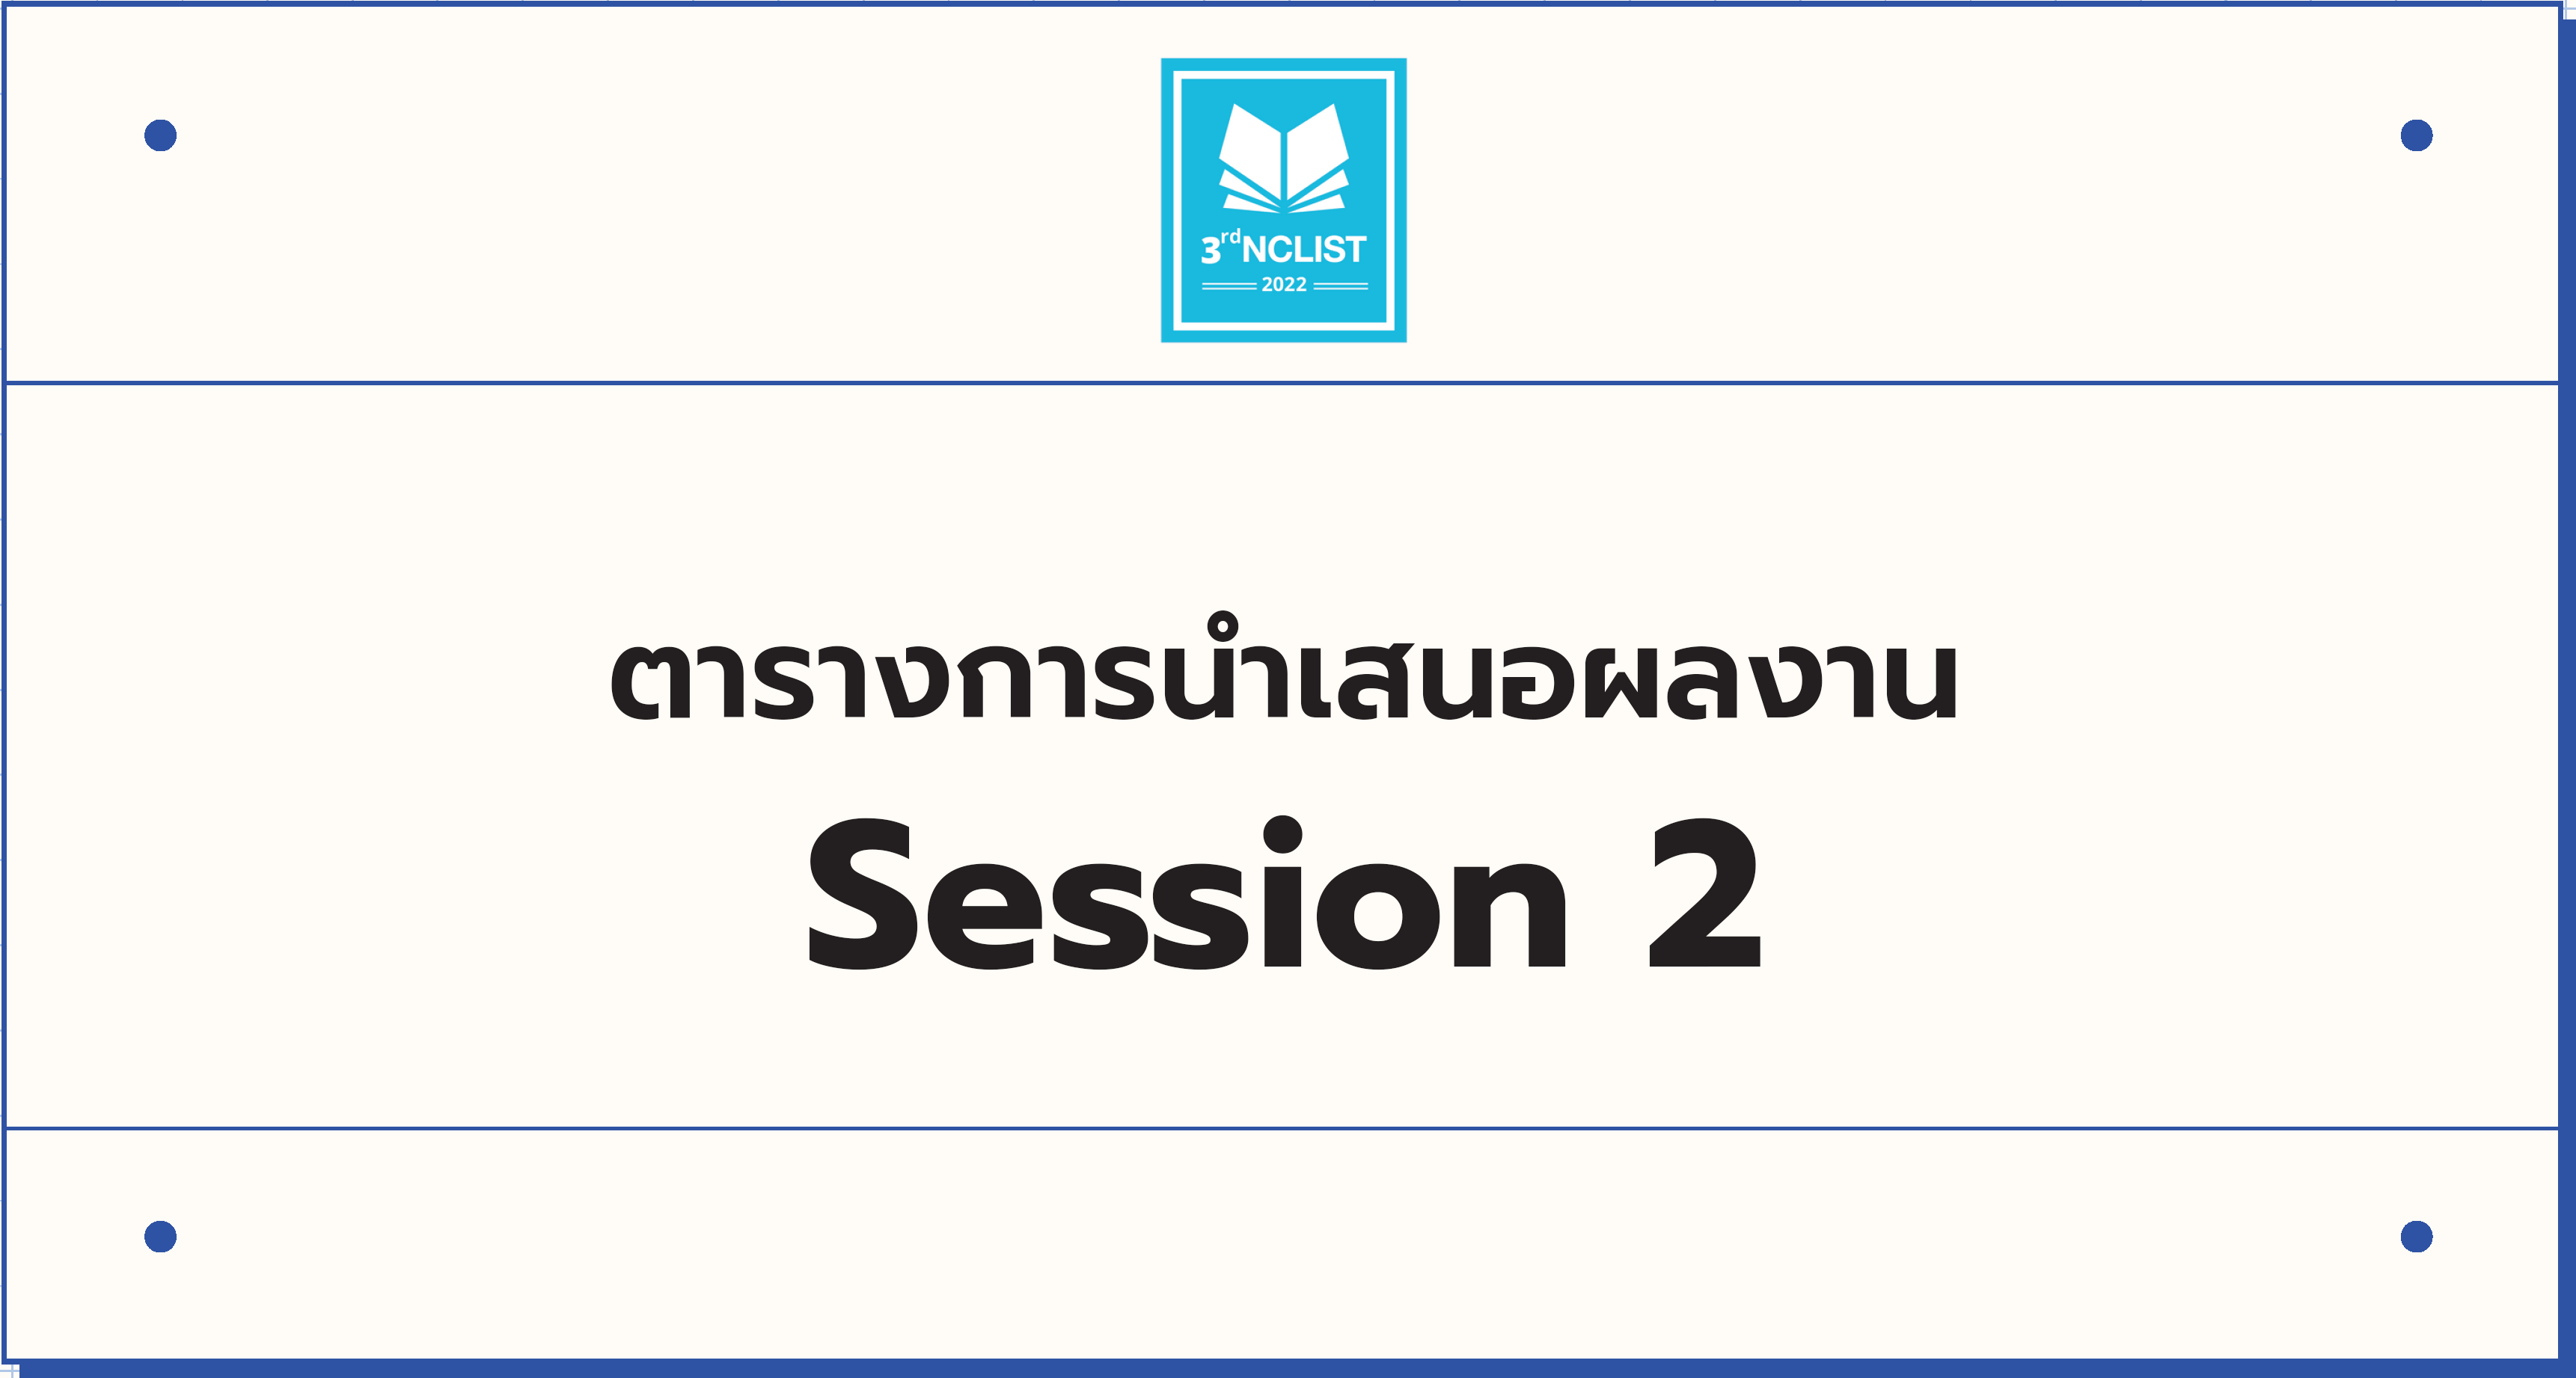 ช่วงบ่าย (Session 2) <br />เวลา 15:00 - 16:45 น.